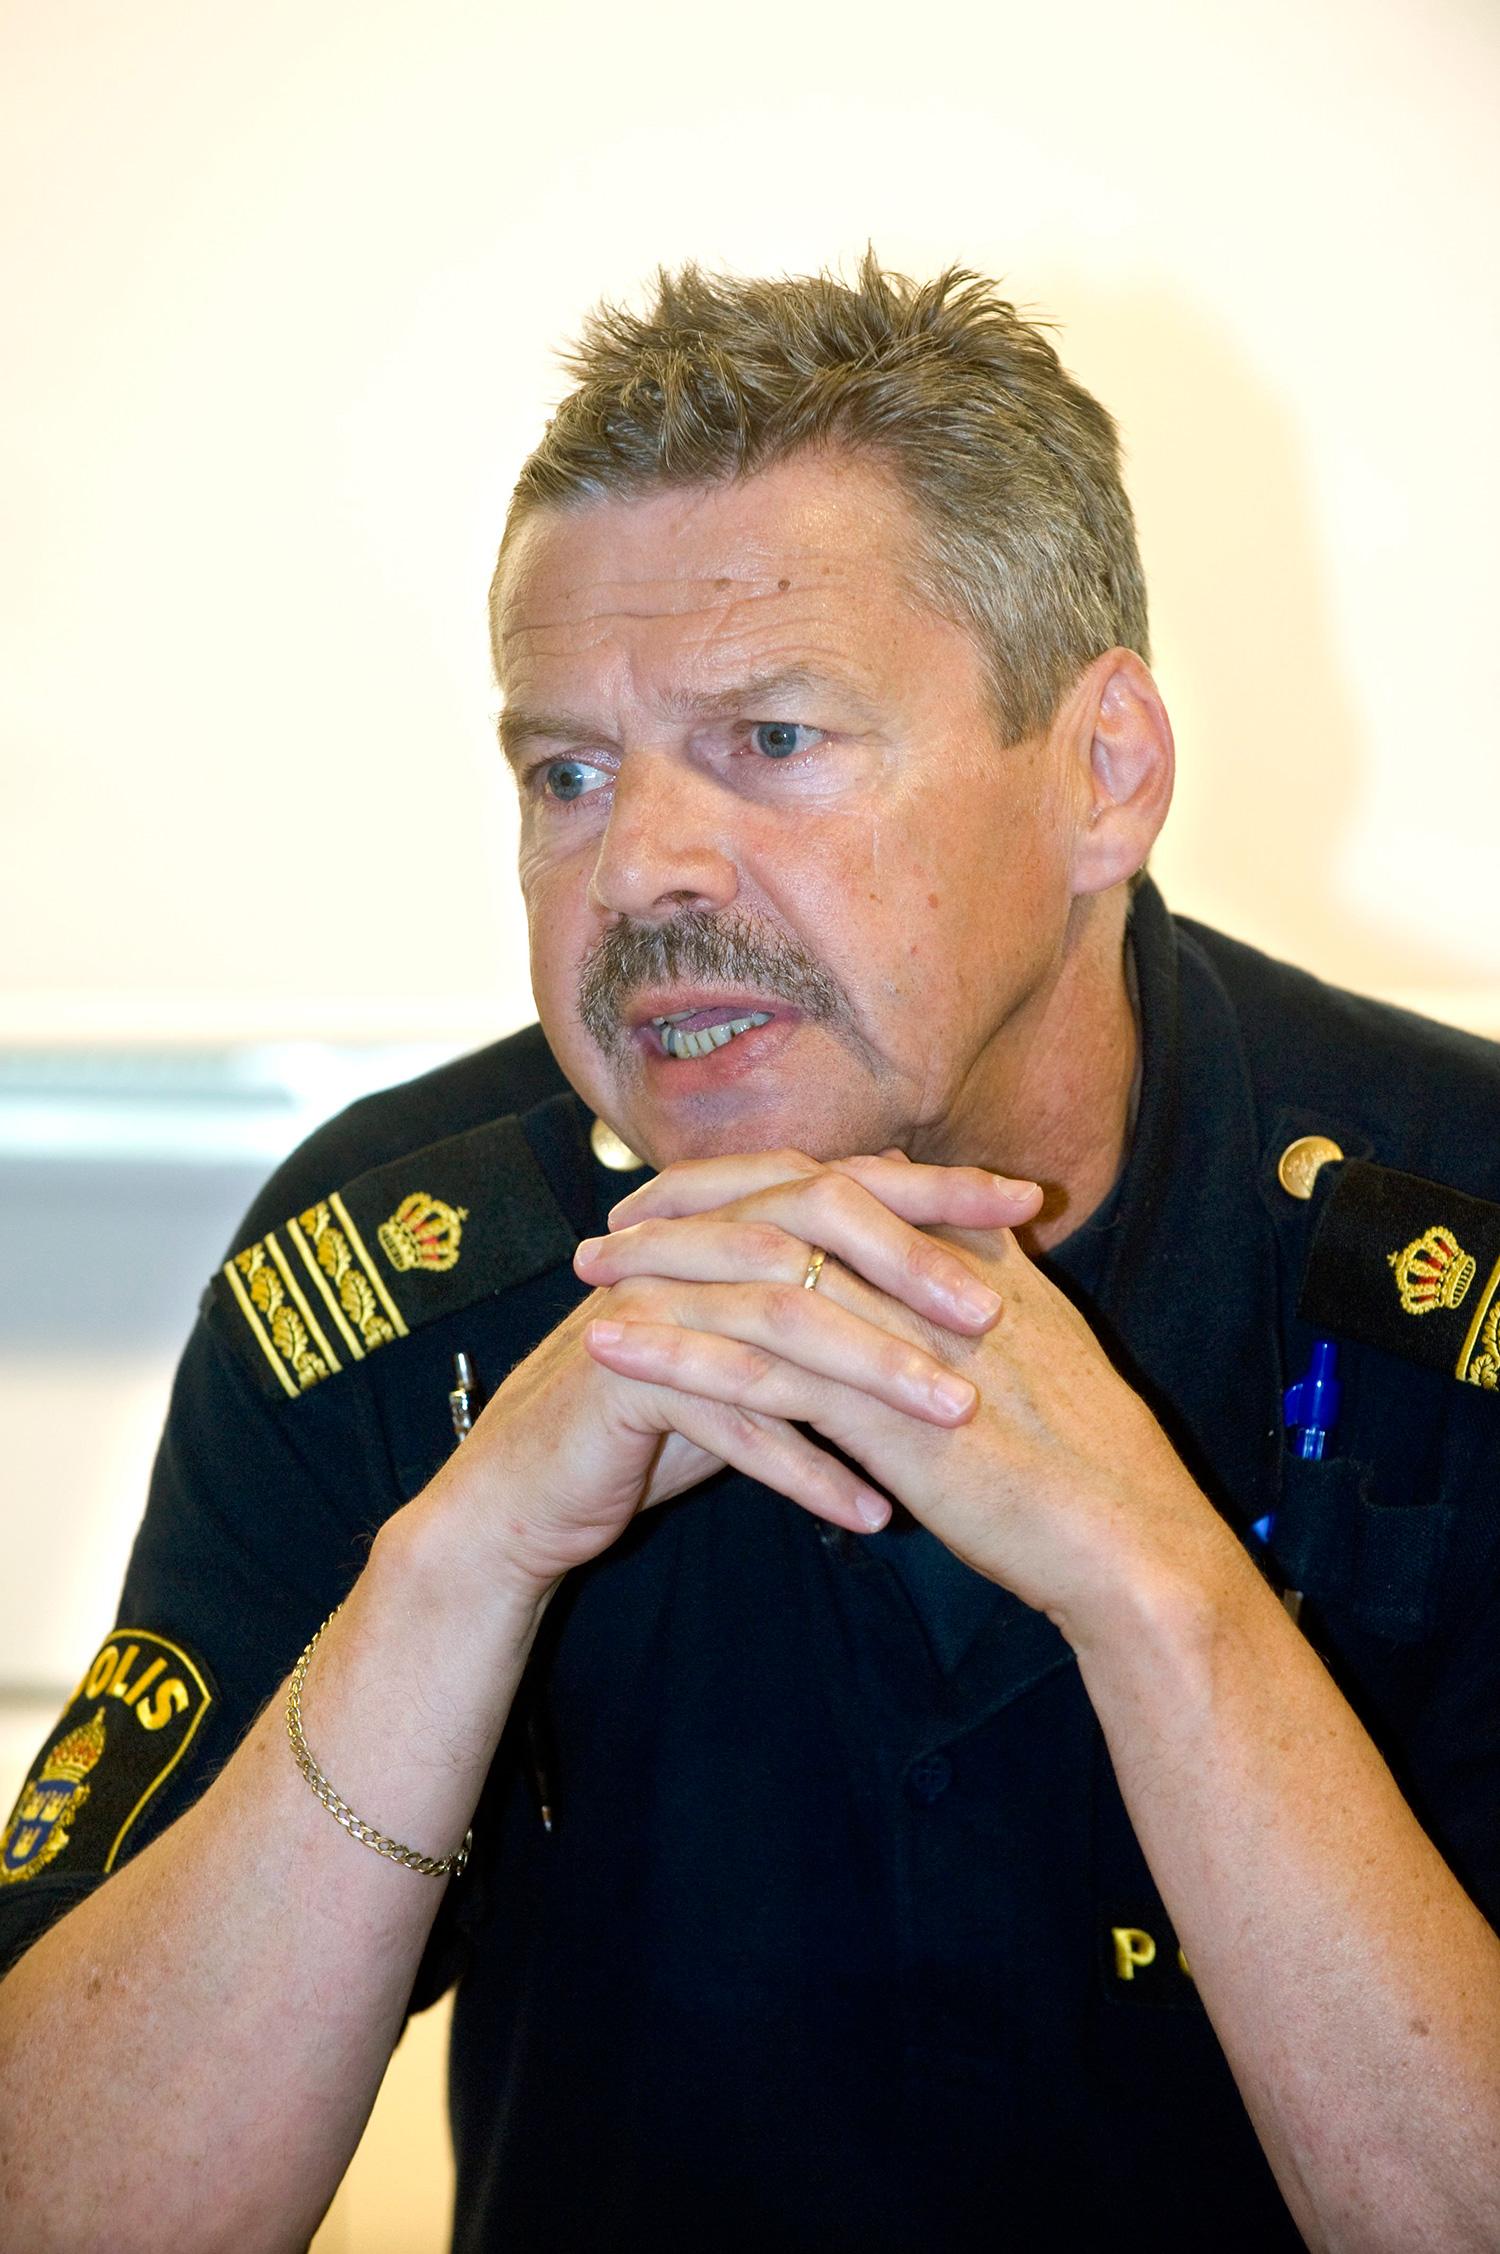 ”Allt handlar ju om att avleda uppmärksamheten, så att människor inte koncentrerar sig på sina tillhörigheter”, säger polisen Lars Byström.